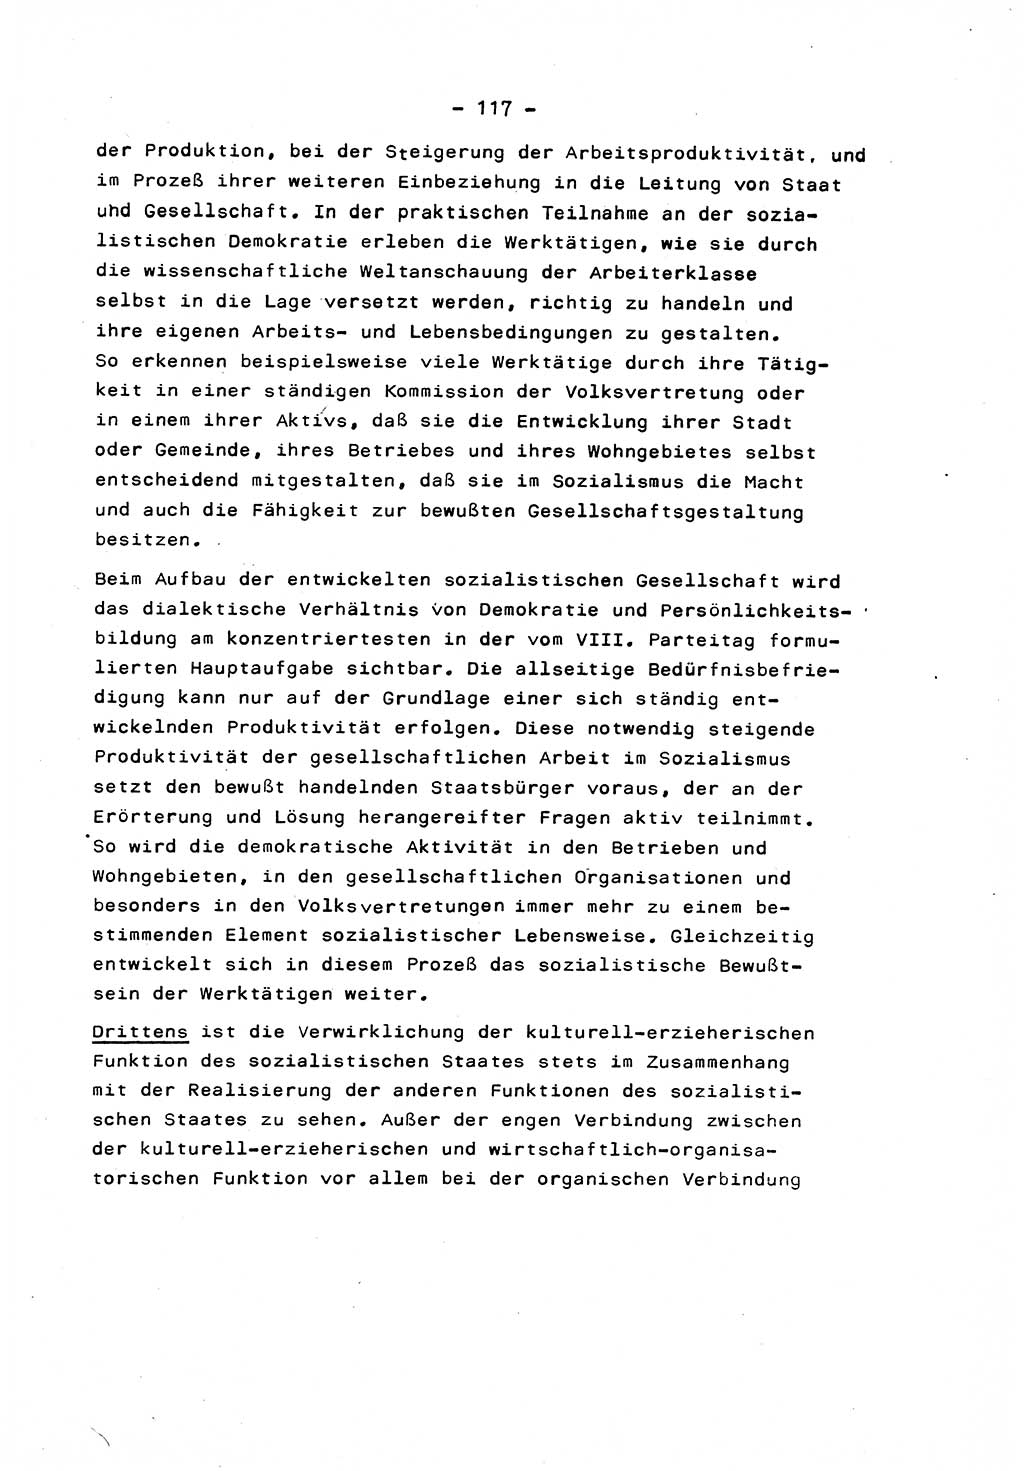 Marxistisch-leninistische Staats- und Rechtstheorie [Deutsche Demokratische Republik (DDR)] 1975, Seite 117 (ML St.-R.-Th. DDR 1975, S. 117)